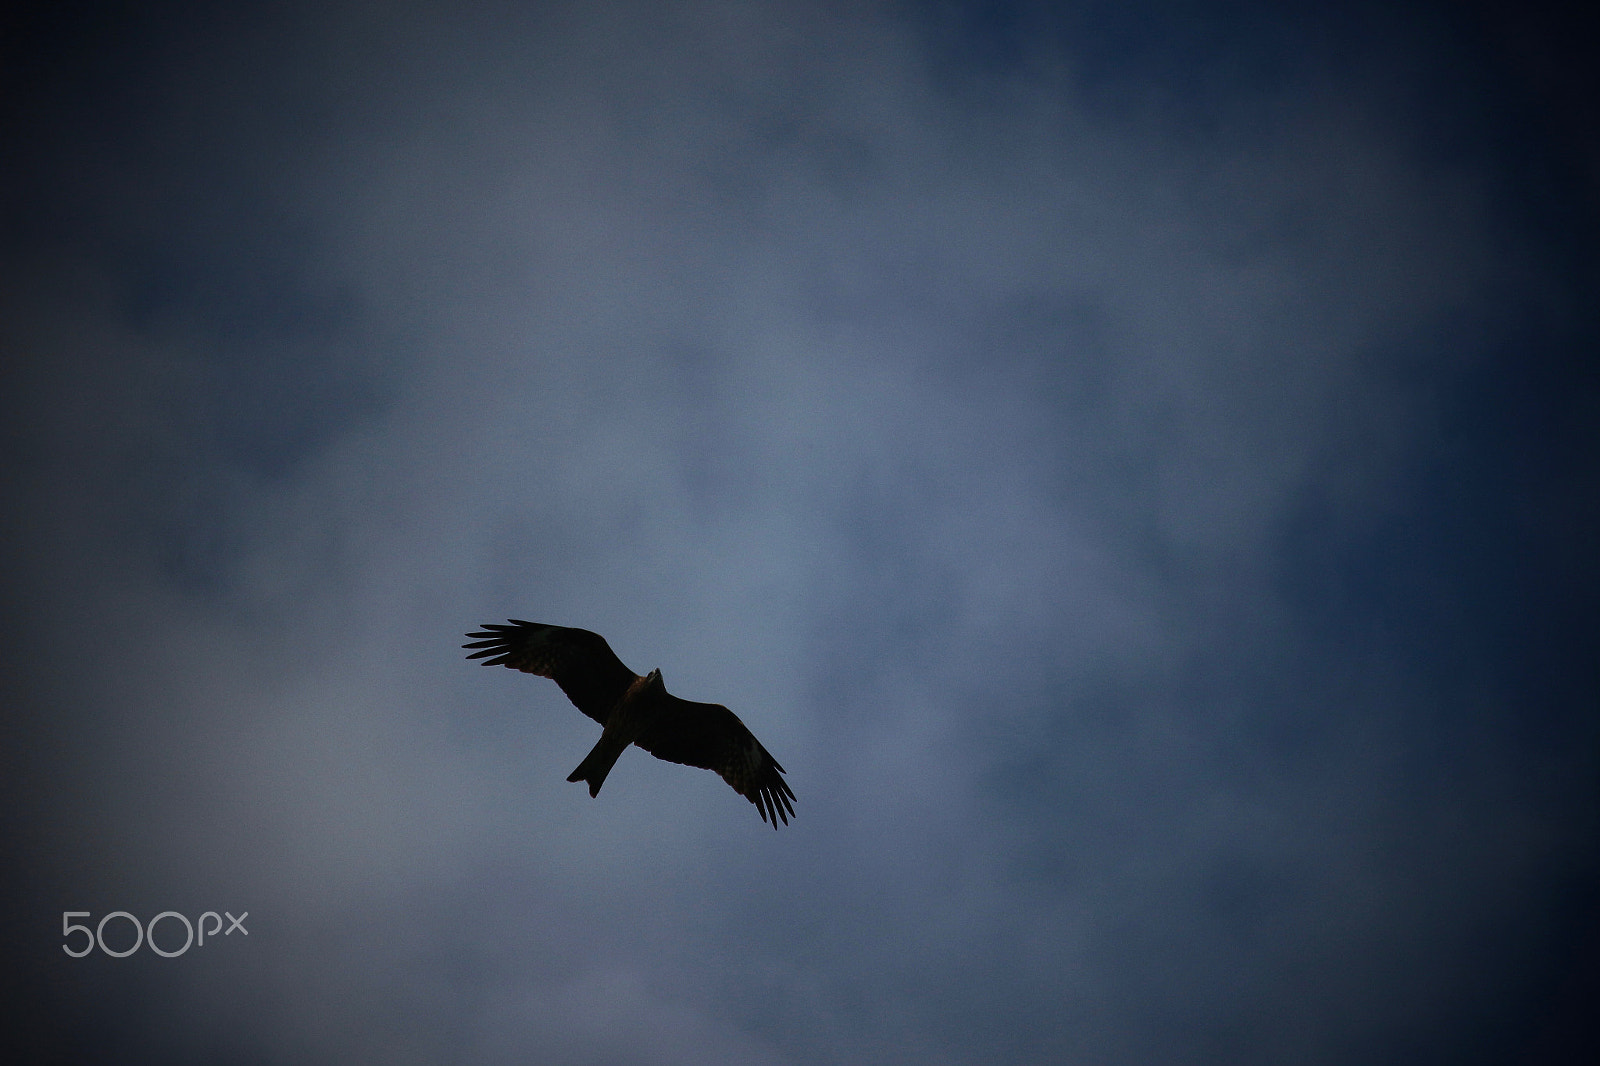 Canon EOS 100D (EOS Rebel SL1 / EOS Kiss X7) sample photo. Bird in the dark sky photography